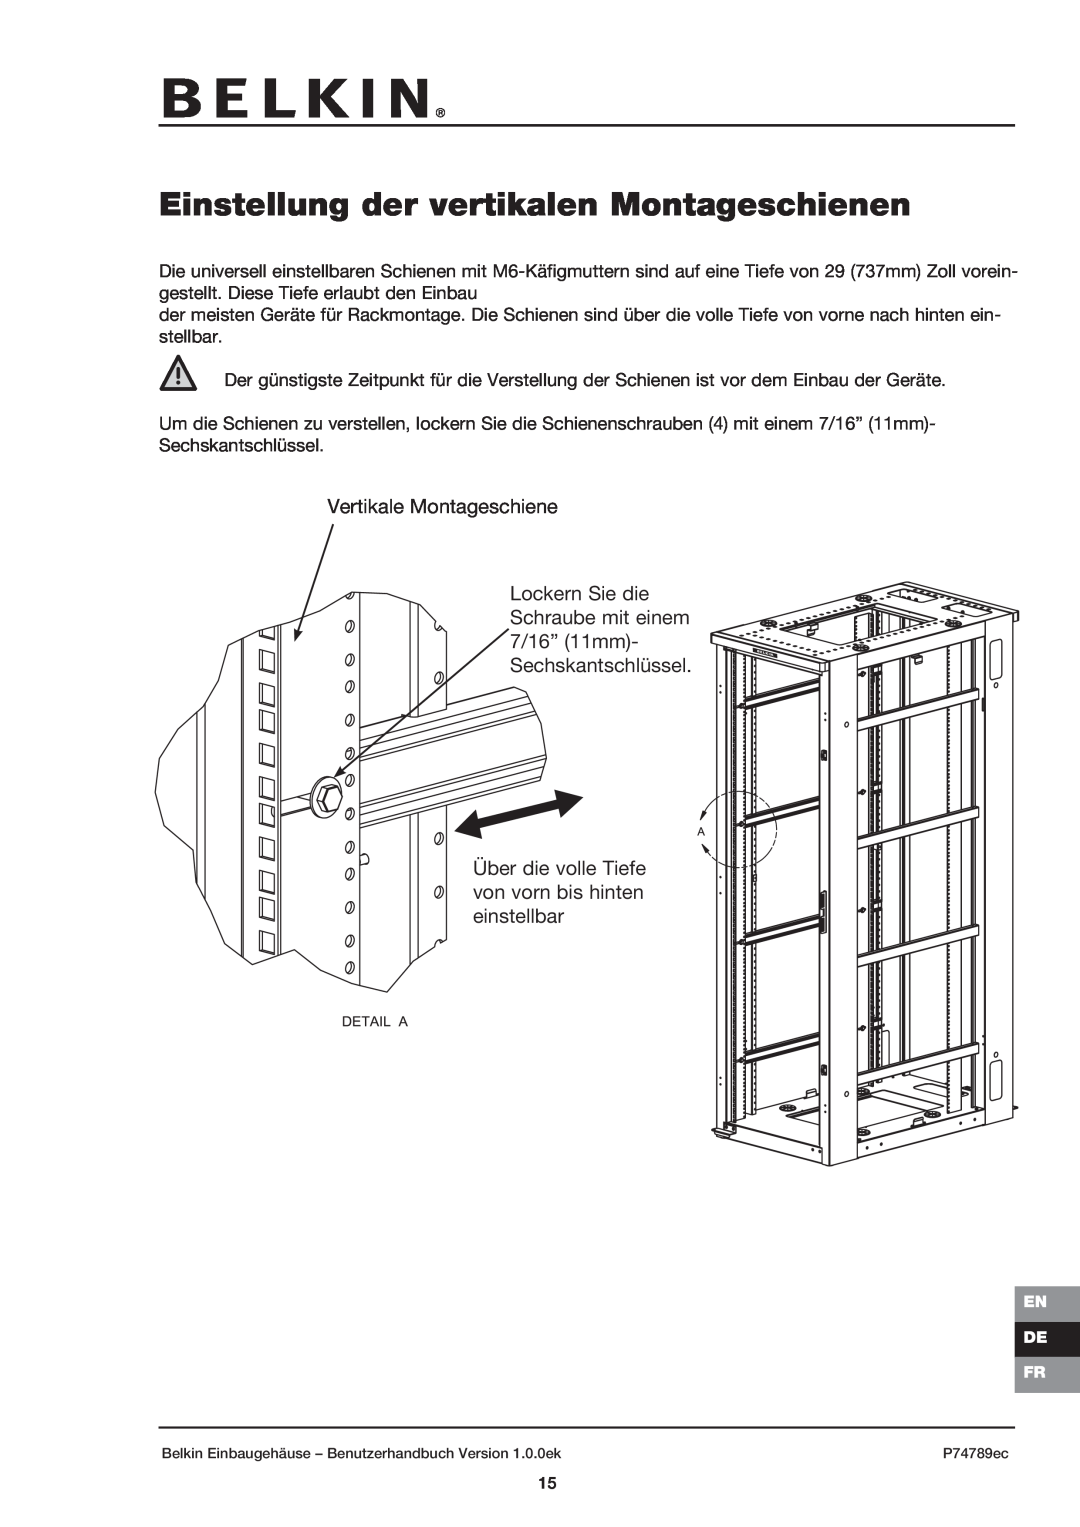 Belkin 42U user manual Einstellung der vertikalen Montageschienen, Vertikale Montageschiene 